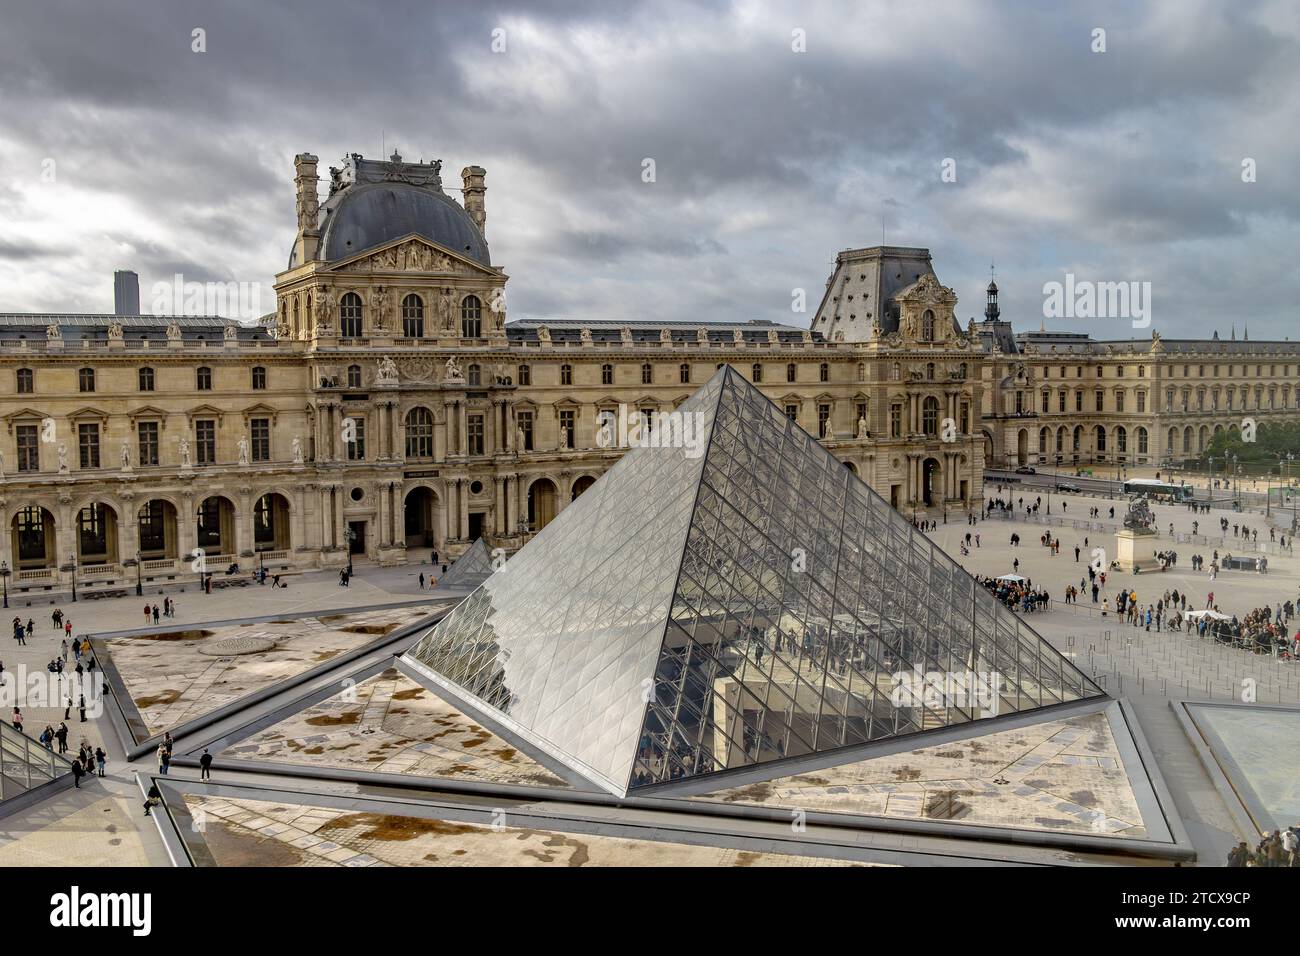 La pyramide du Louvre est une grande structure de verre et de métal la pyramide et sert d'entrée principale au Musée du Louvre à Paris, France Banque D'Images